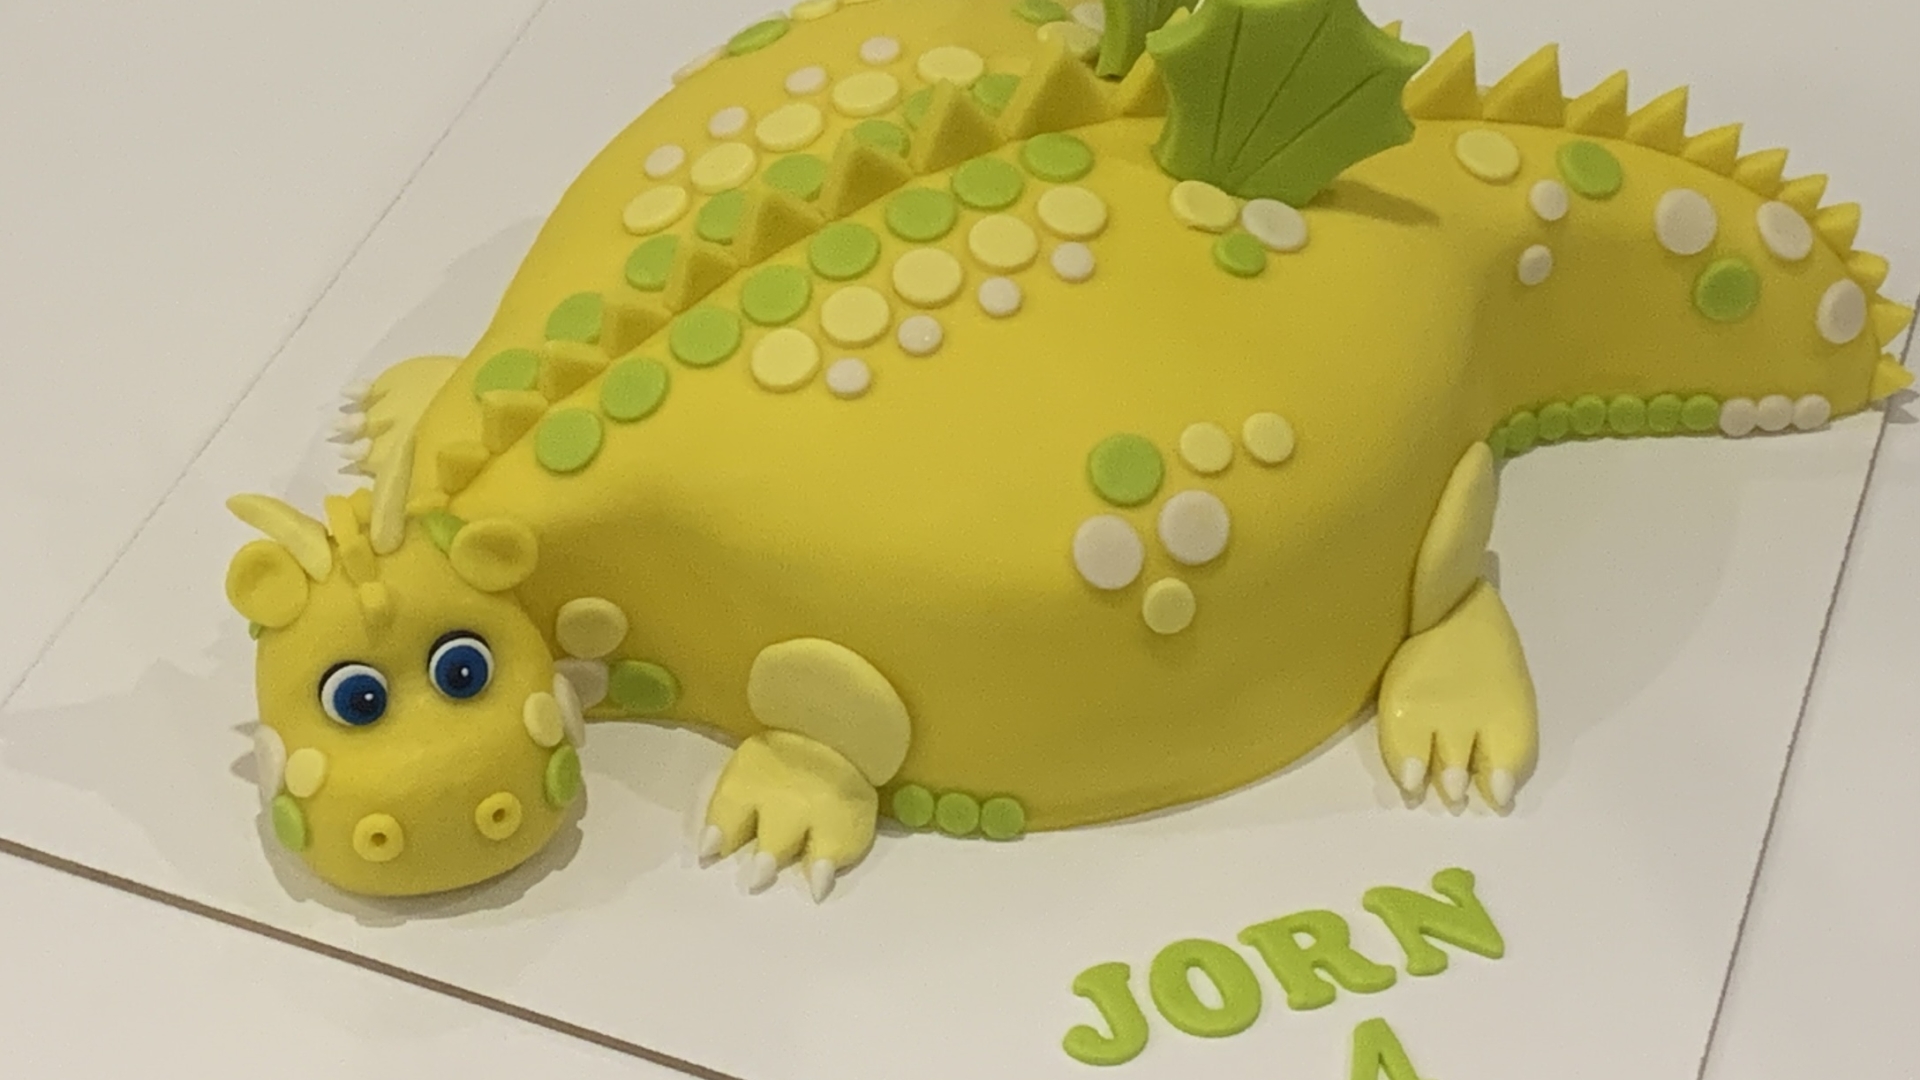 3D dinosaurus taart JORN